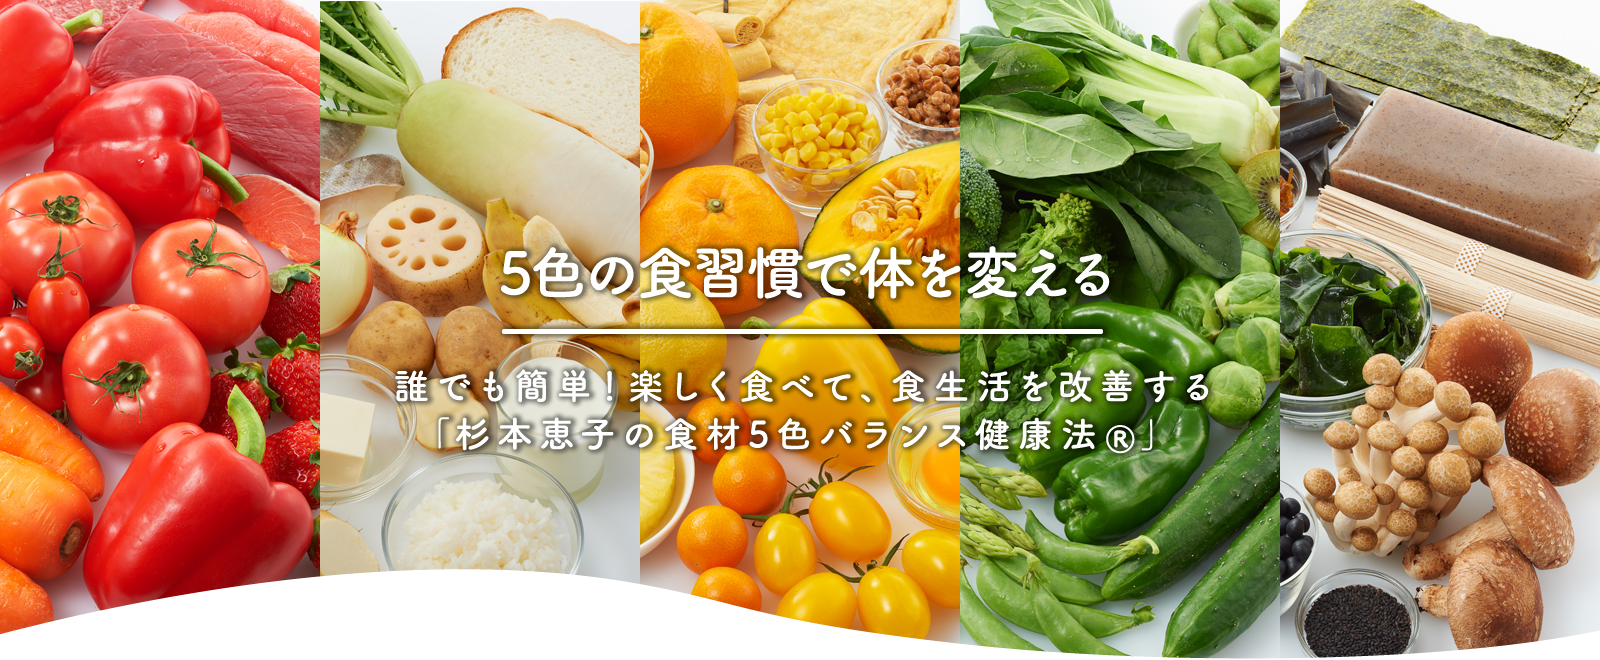 5つの食習慣で体を変える 誰でも簡単!楽しく食べて、食生活を改善する「杉本恵子の食材5色バランス健康法®」